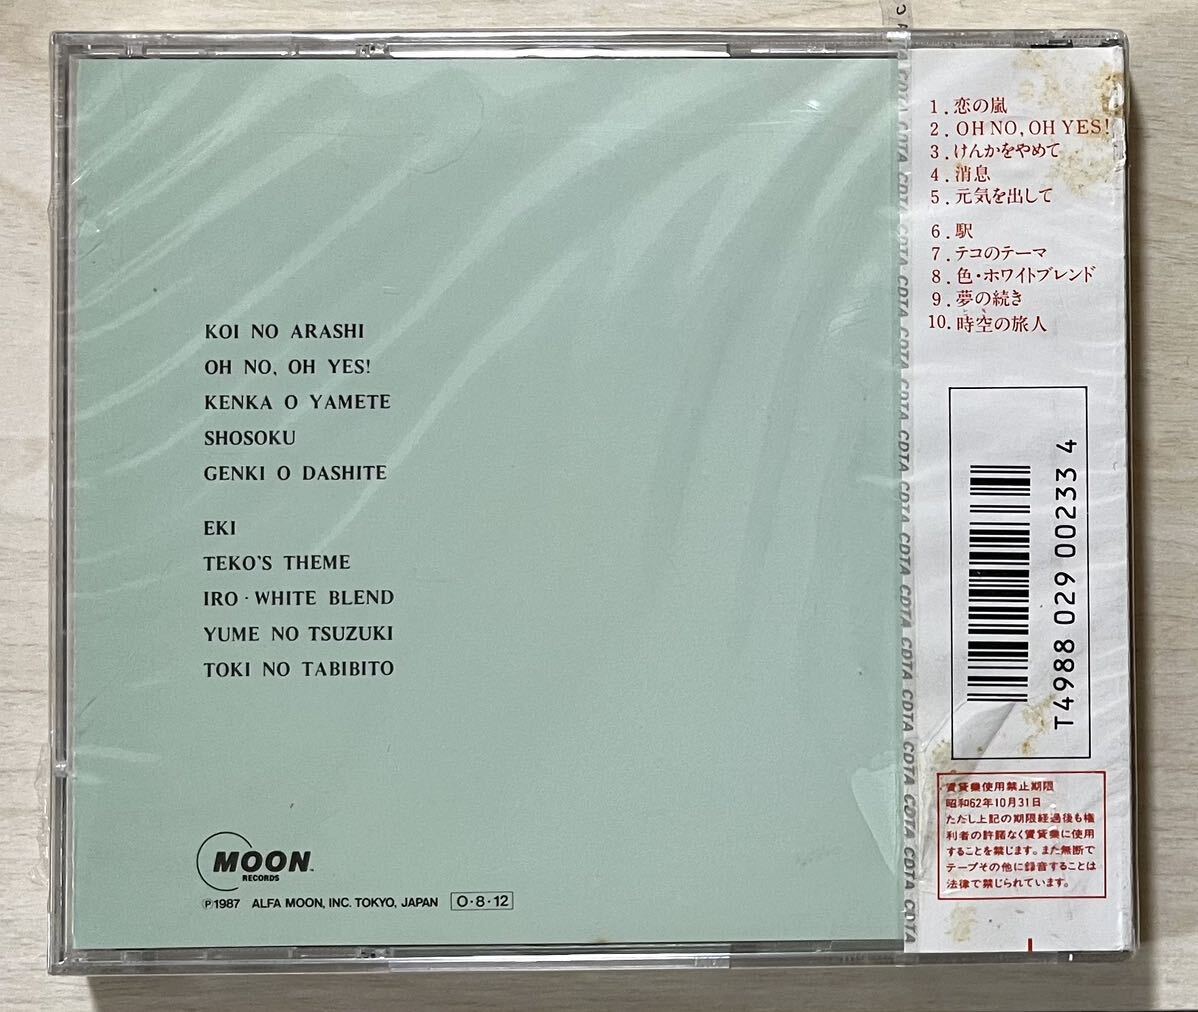  редкостный первый период стандарт нераспечатанный CD* Takeuchi Mariya / request альбом Yamashita Tatsuro производить Alpha moon 32XM-46 станция,.... прекратив, изначальный ... делать др. 